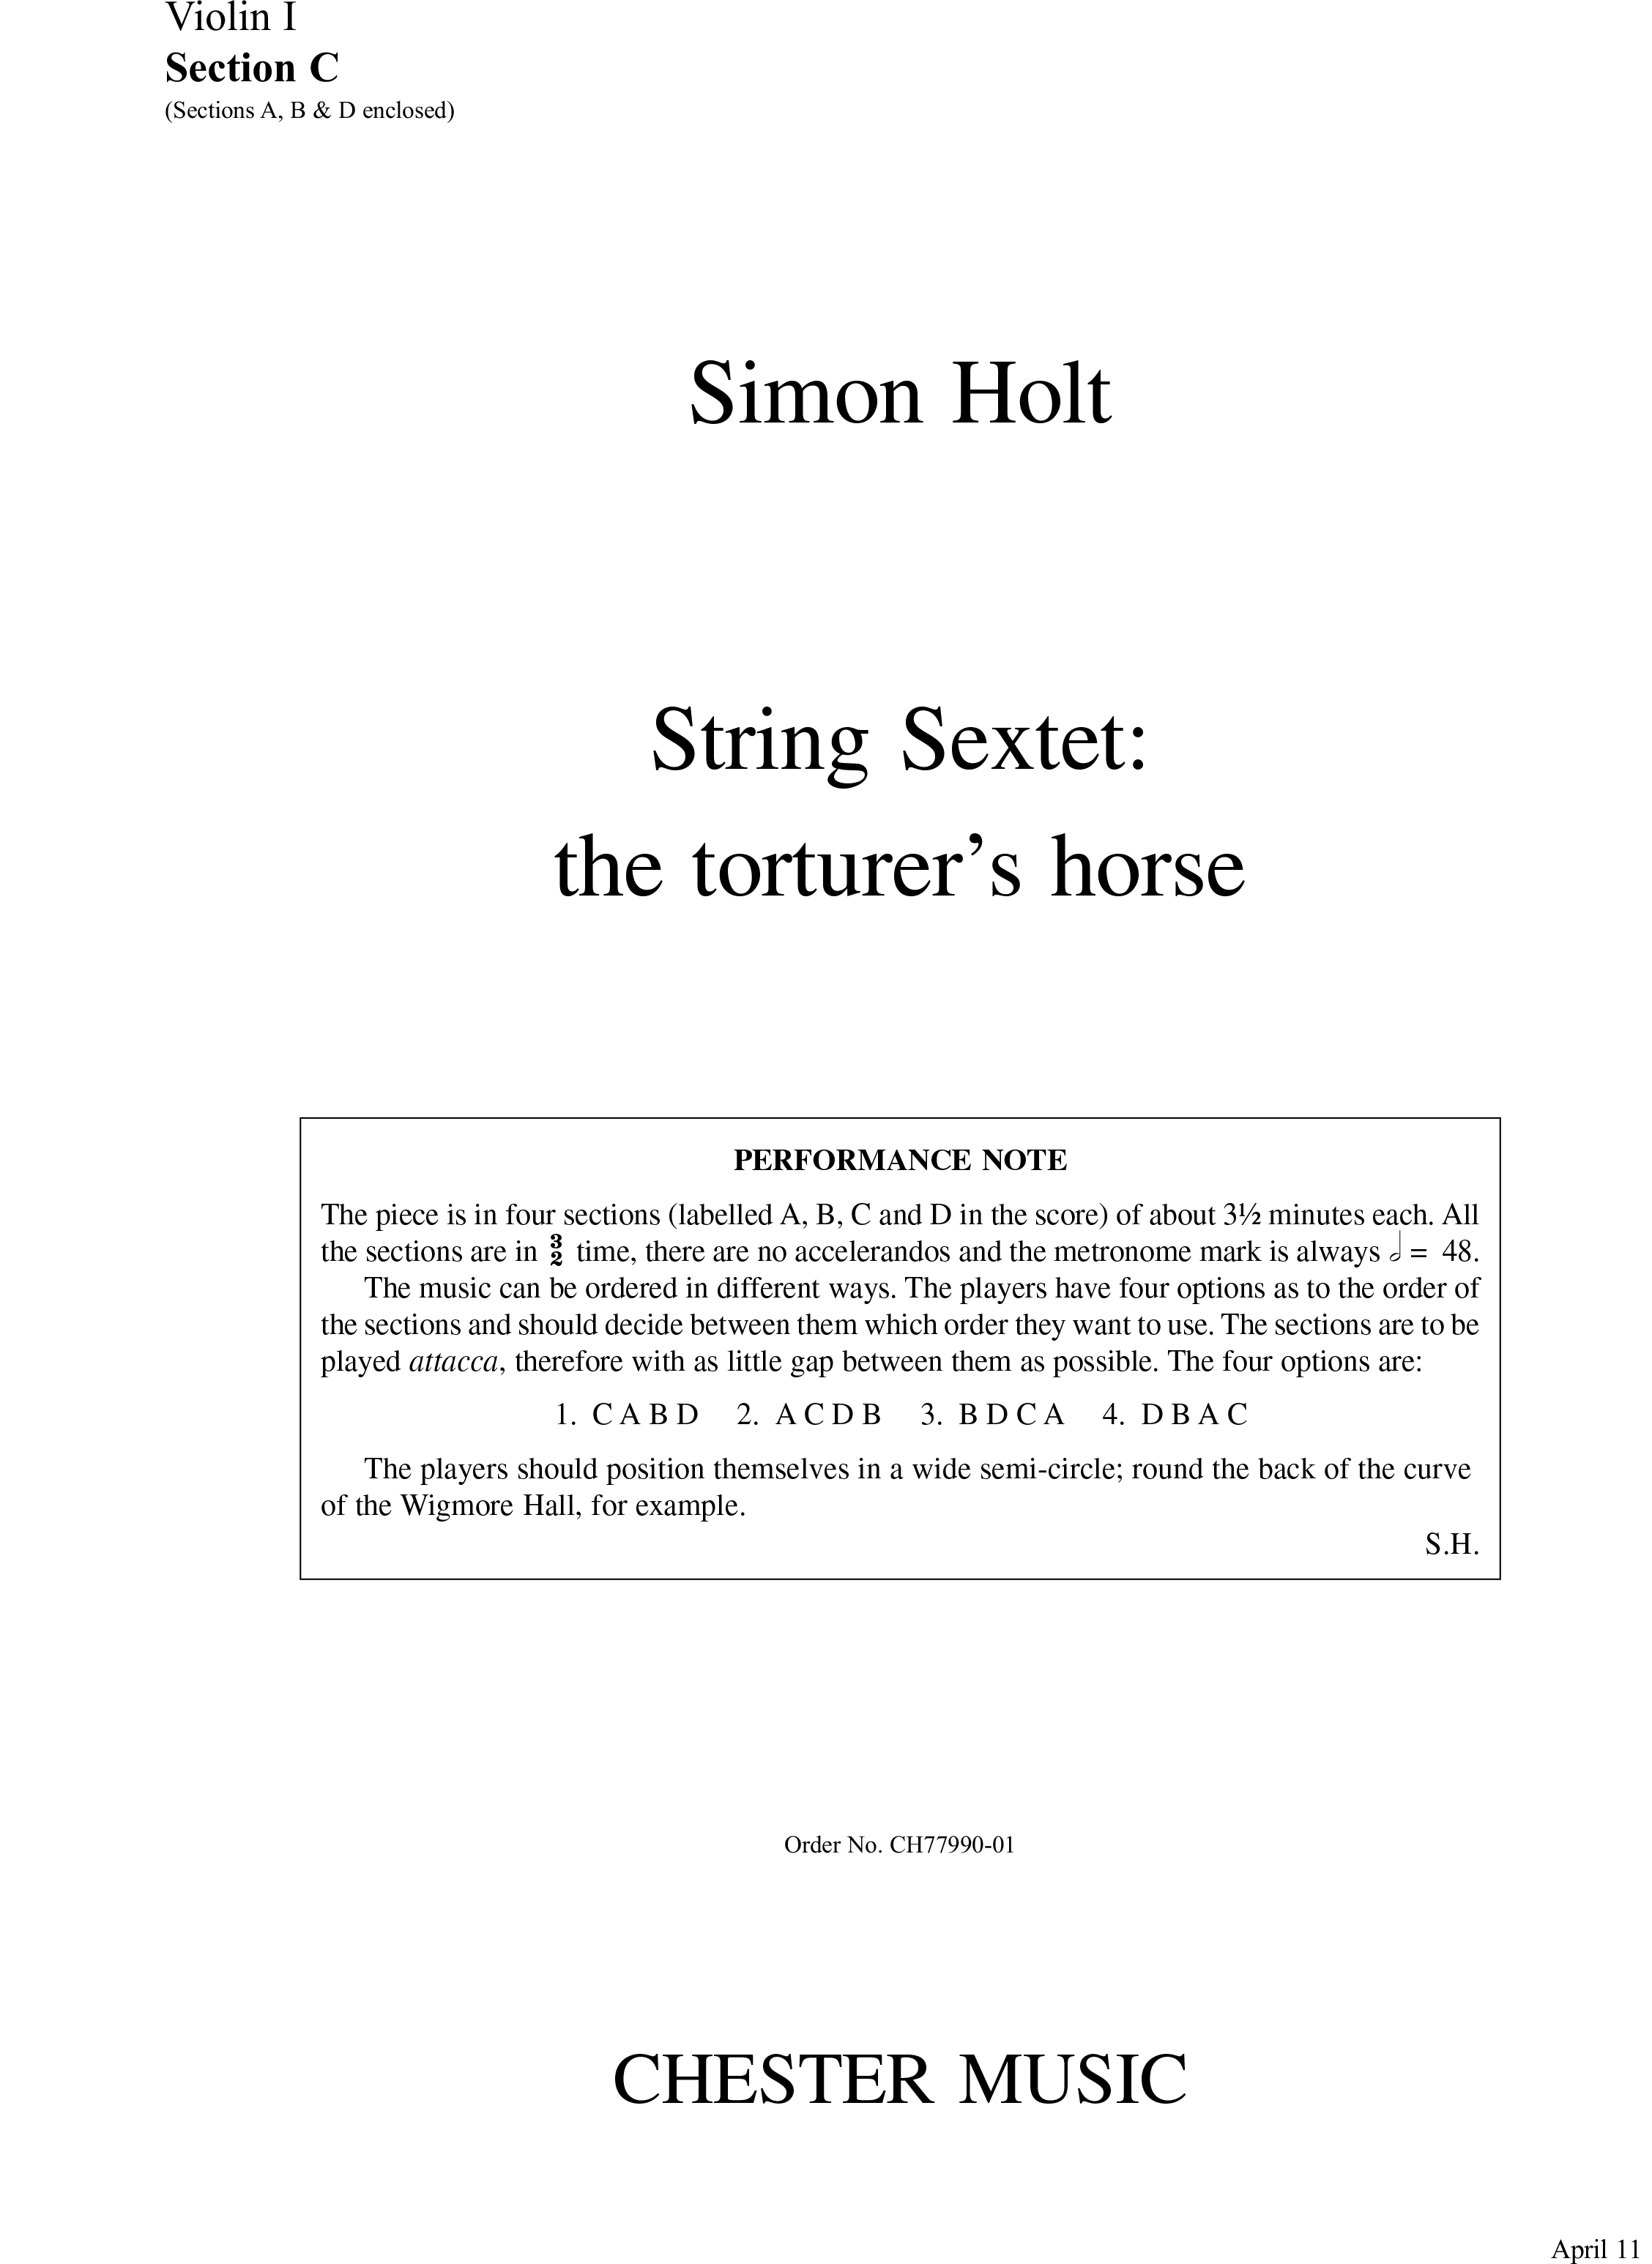 Simon Holt: String Sextet - The Torturer's Horse (Parts): String Ensemble: Parts